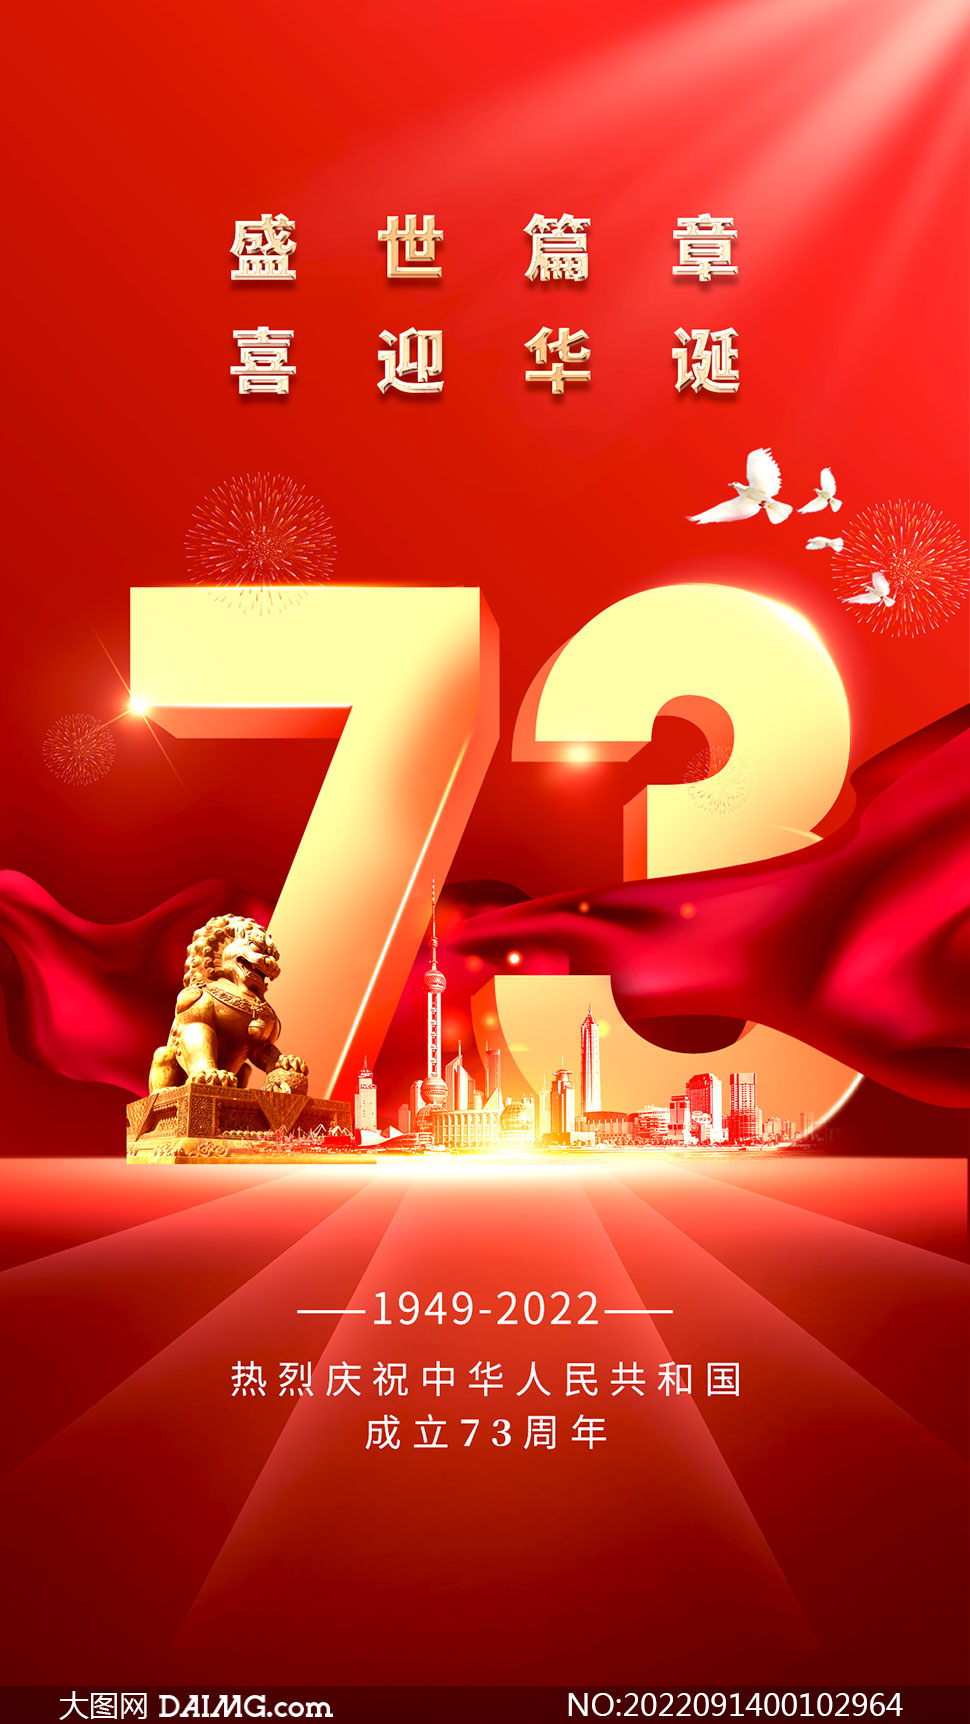 庆祝国庆73周年手机端海报设计PSD素材